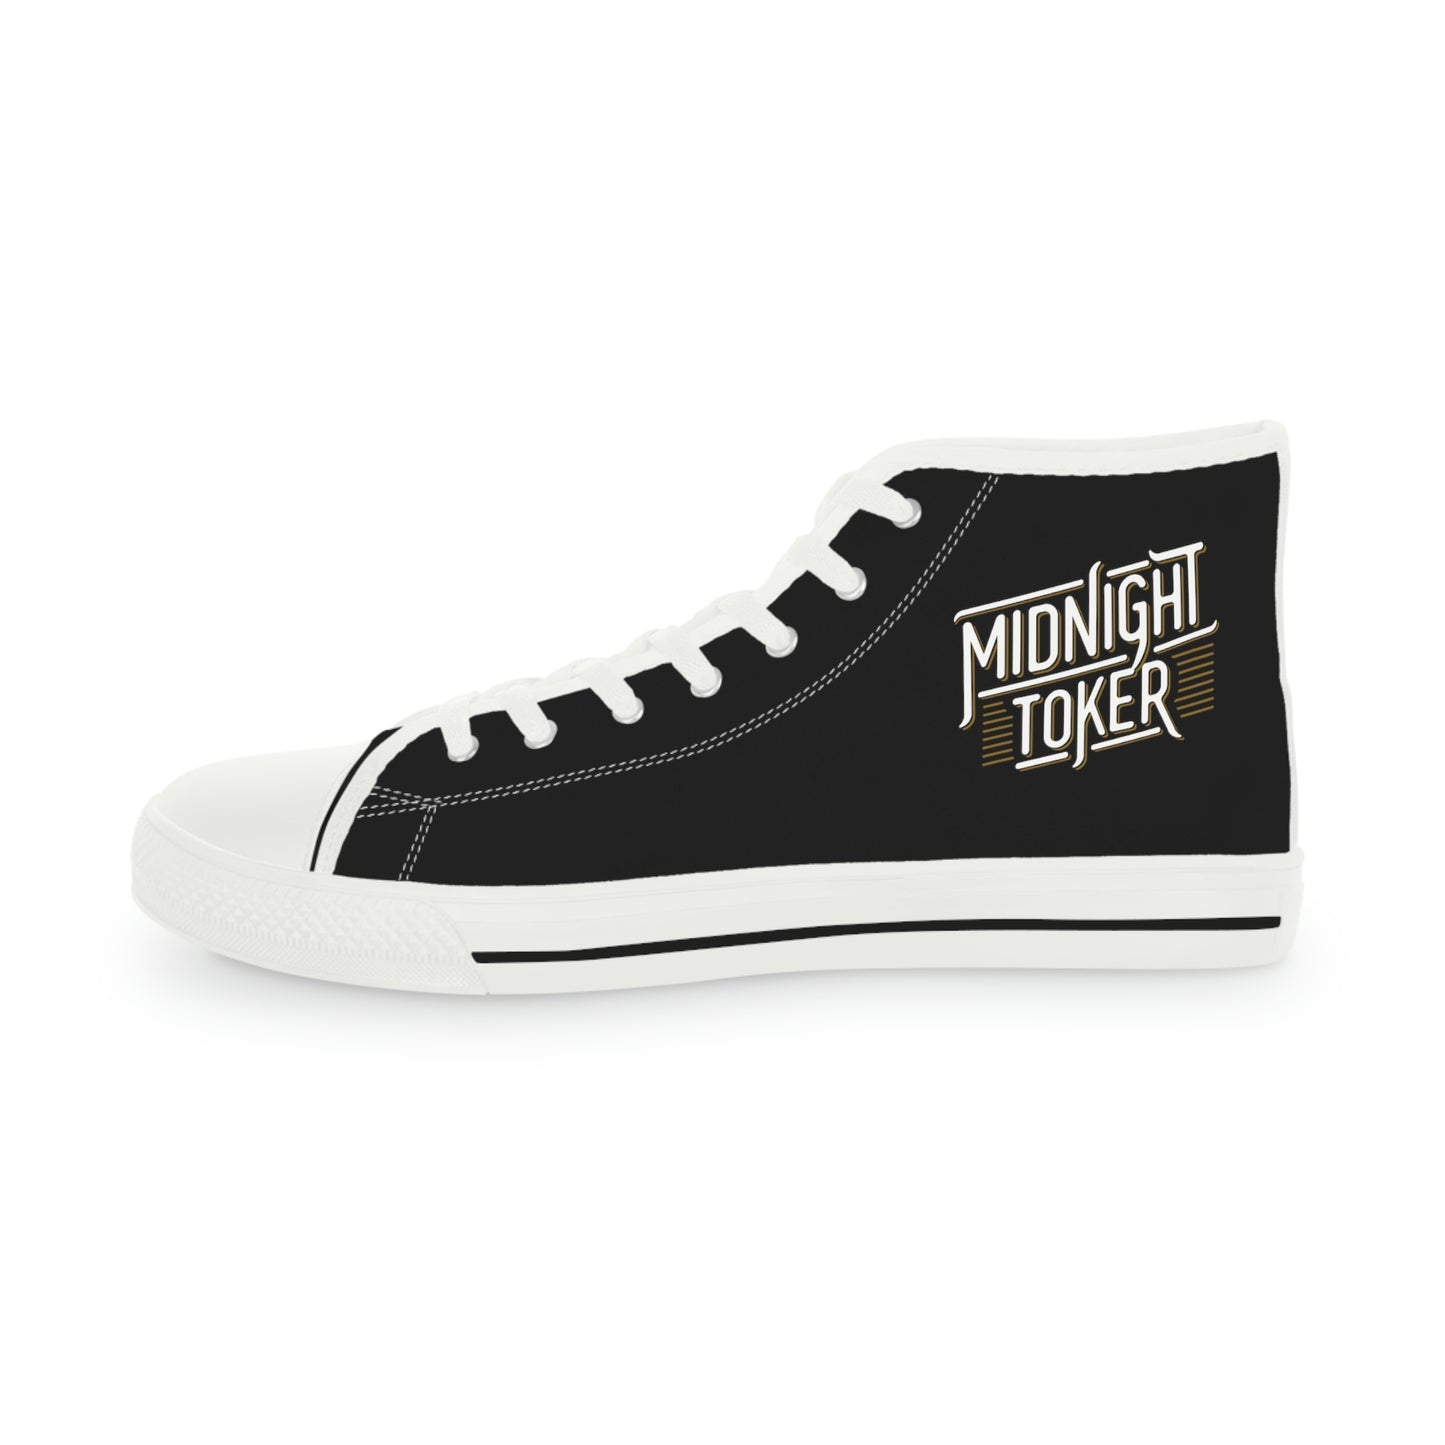 Midnight Toker - Men's High Top Sneakers